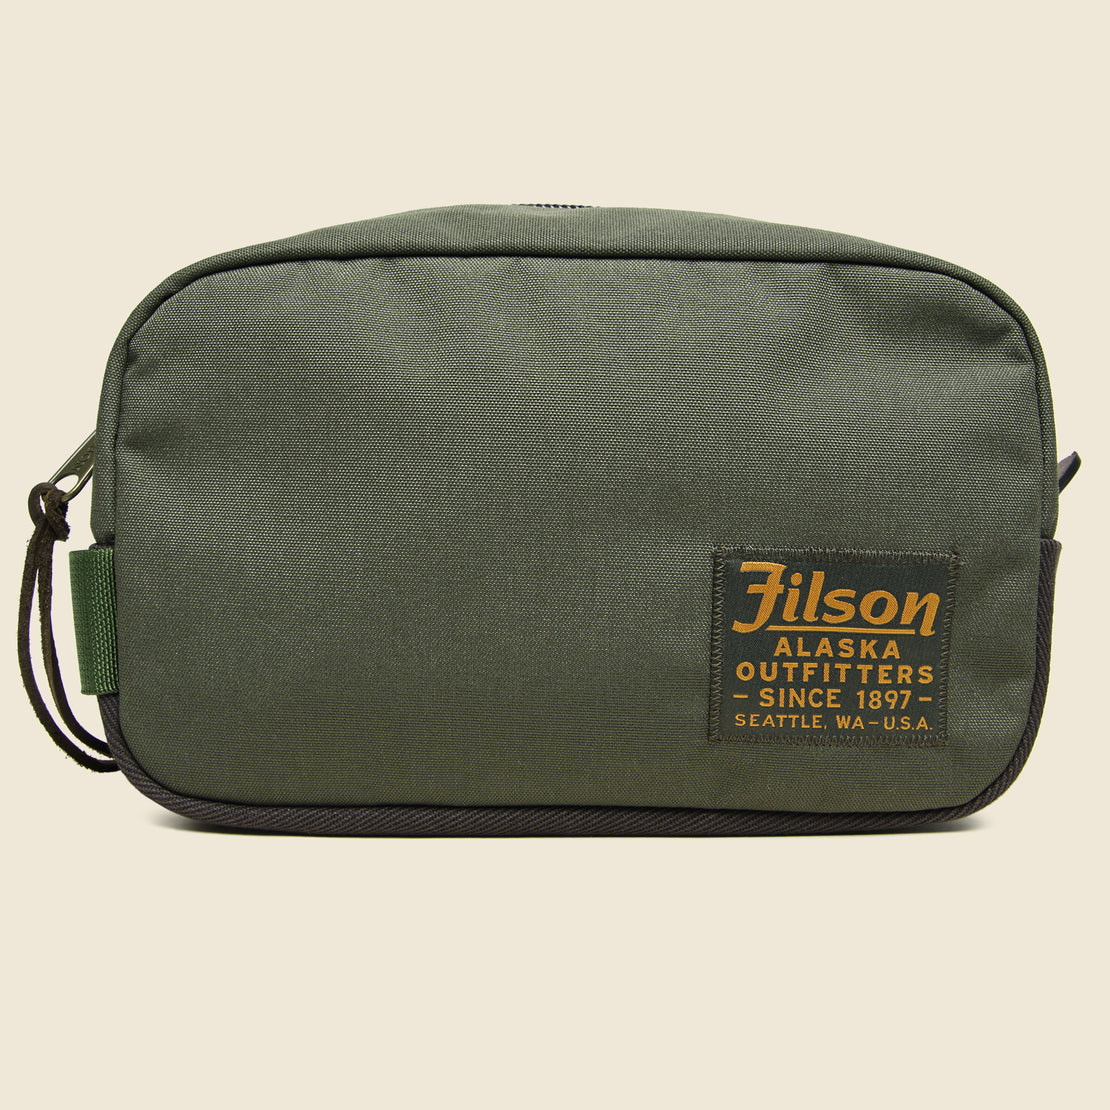 Filson Travel Pack - Otter Green